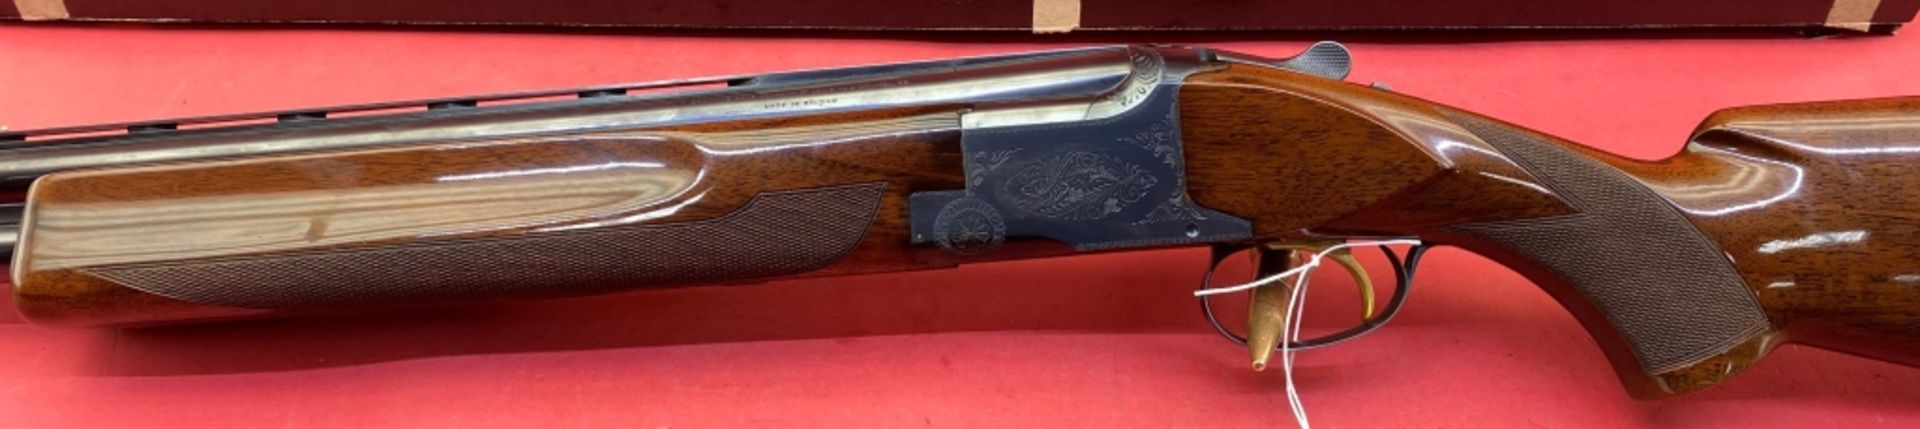 Browning Superposed 12 ga Shotgun - Image 15 of 16